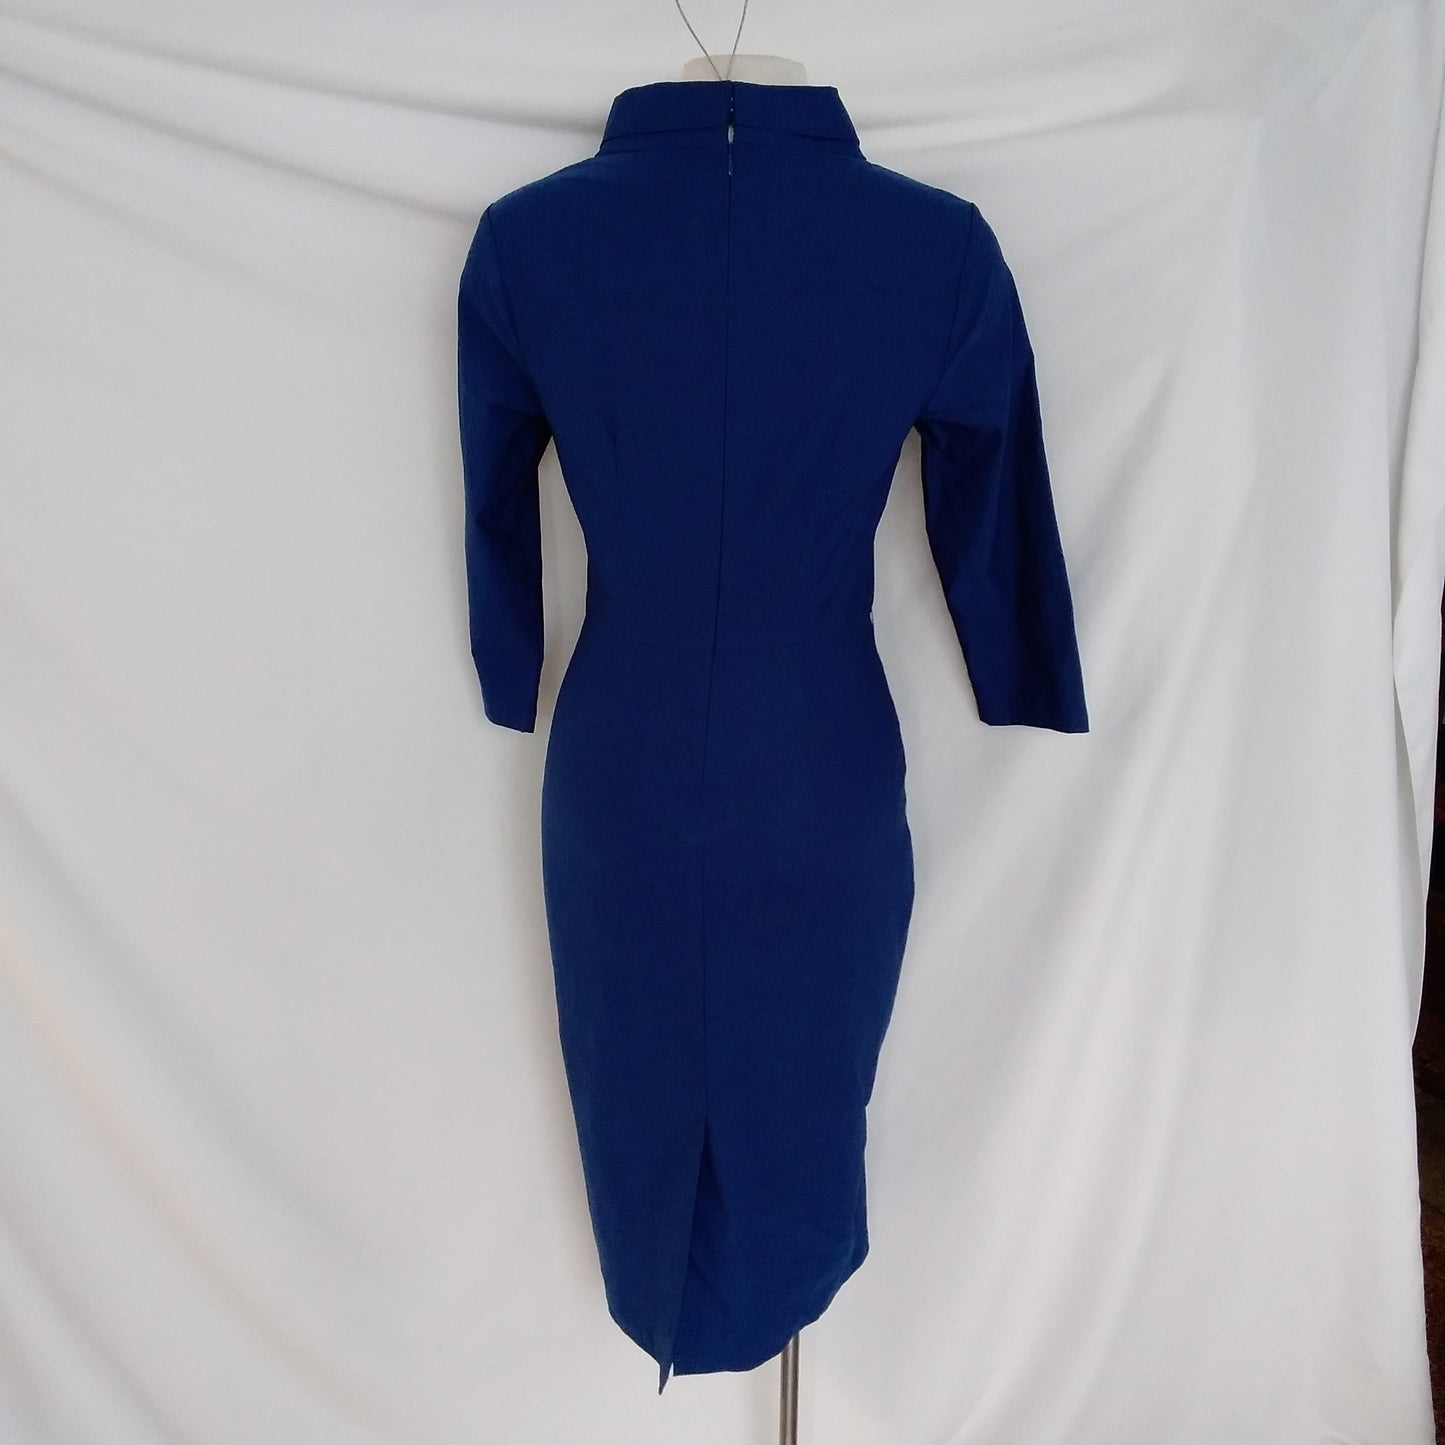 Muxxn Boutique Blue Dress - NWT - Size L